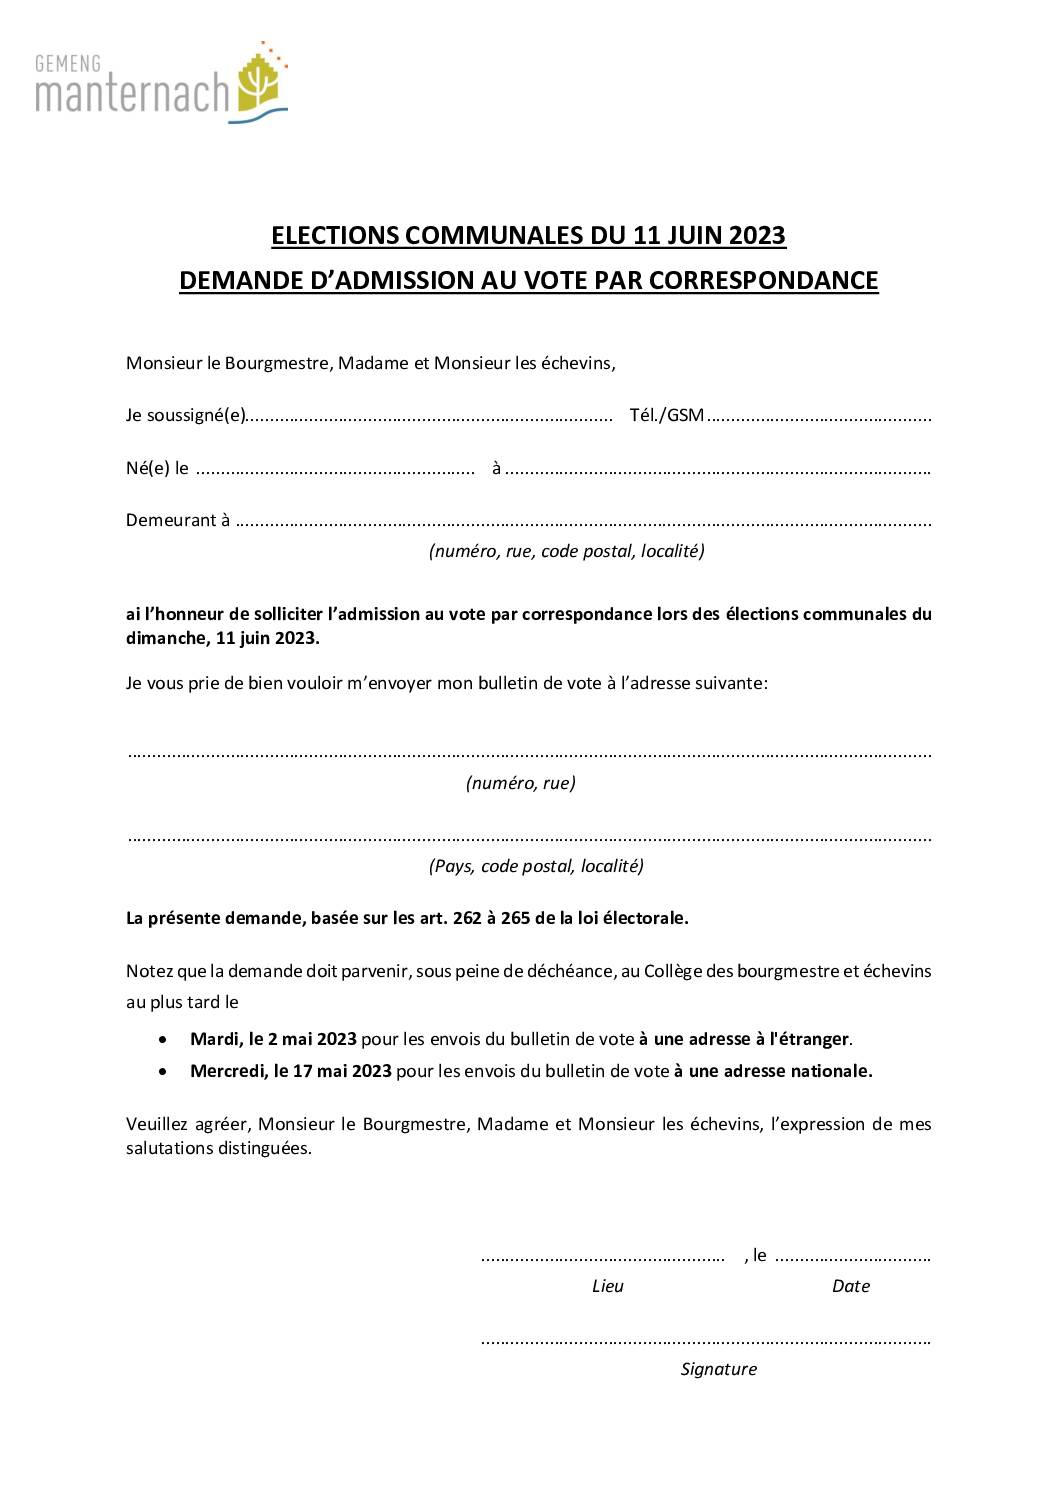 Vote par correspondance_ELECTIONS COMMUNALES_11.06.2023